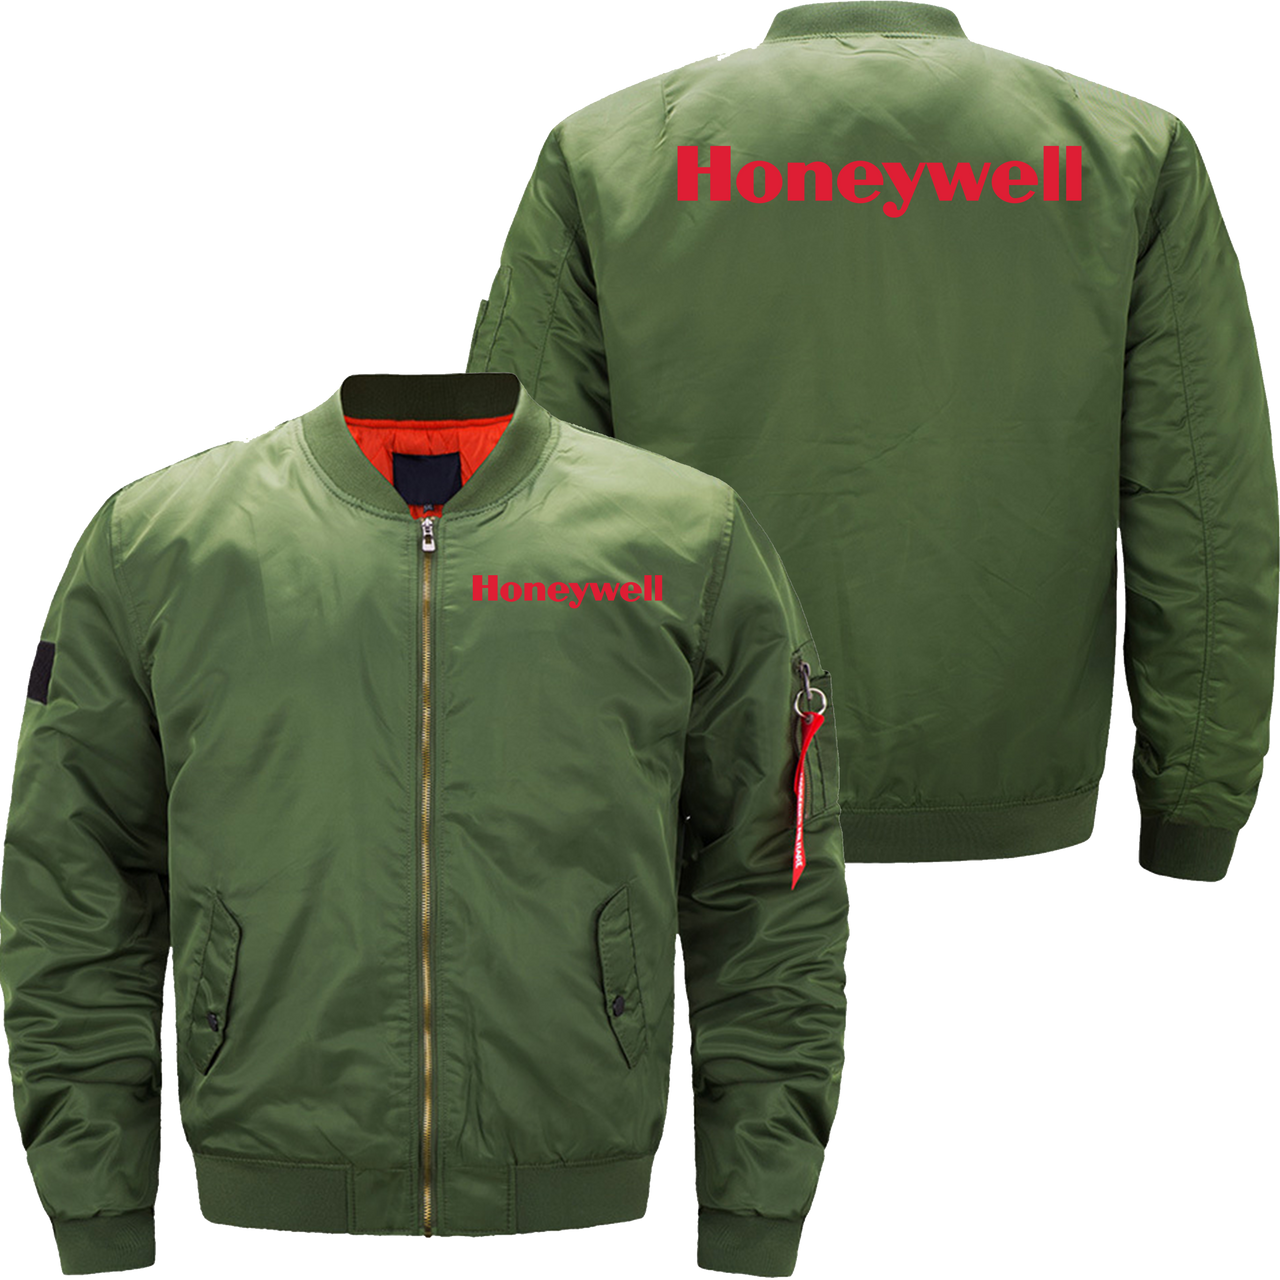 Honeywell Jacket